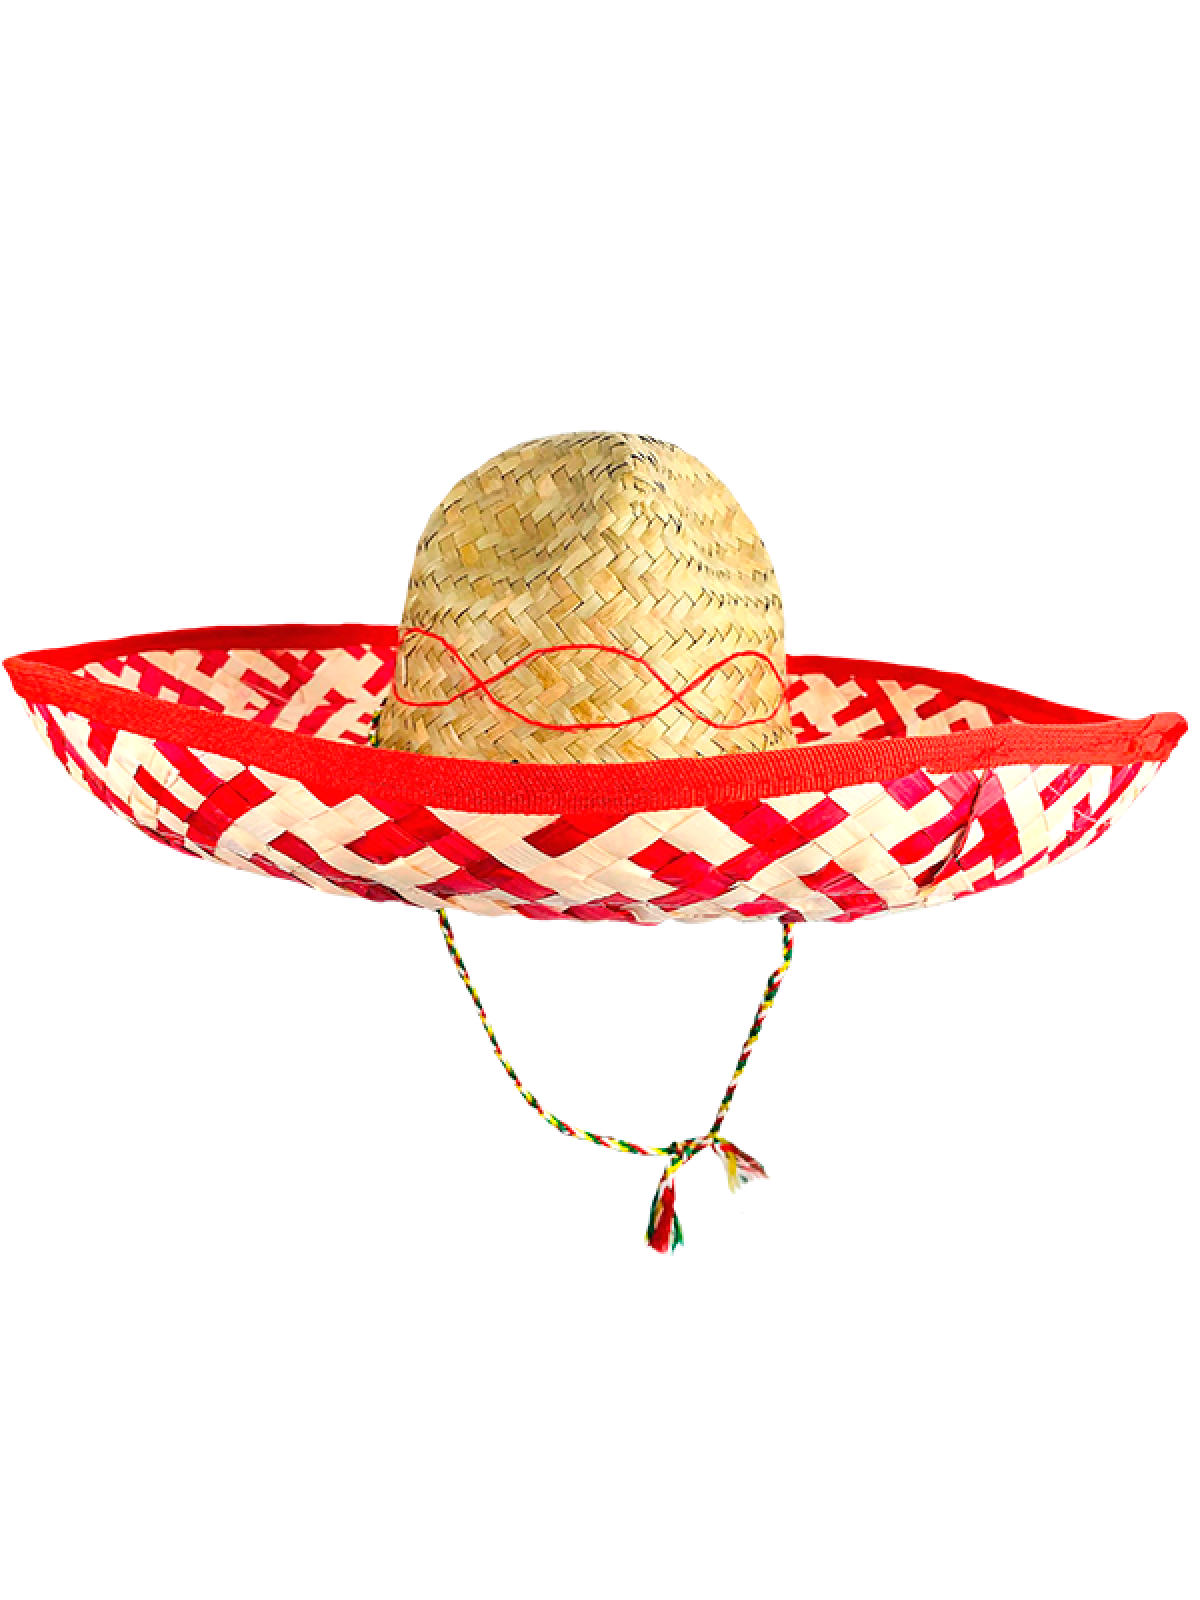 Køb Sombrero Hat, Rød til kun 49 kr | Lynhurtig 24t levering |